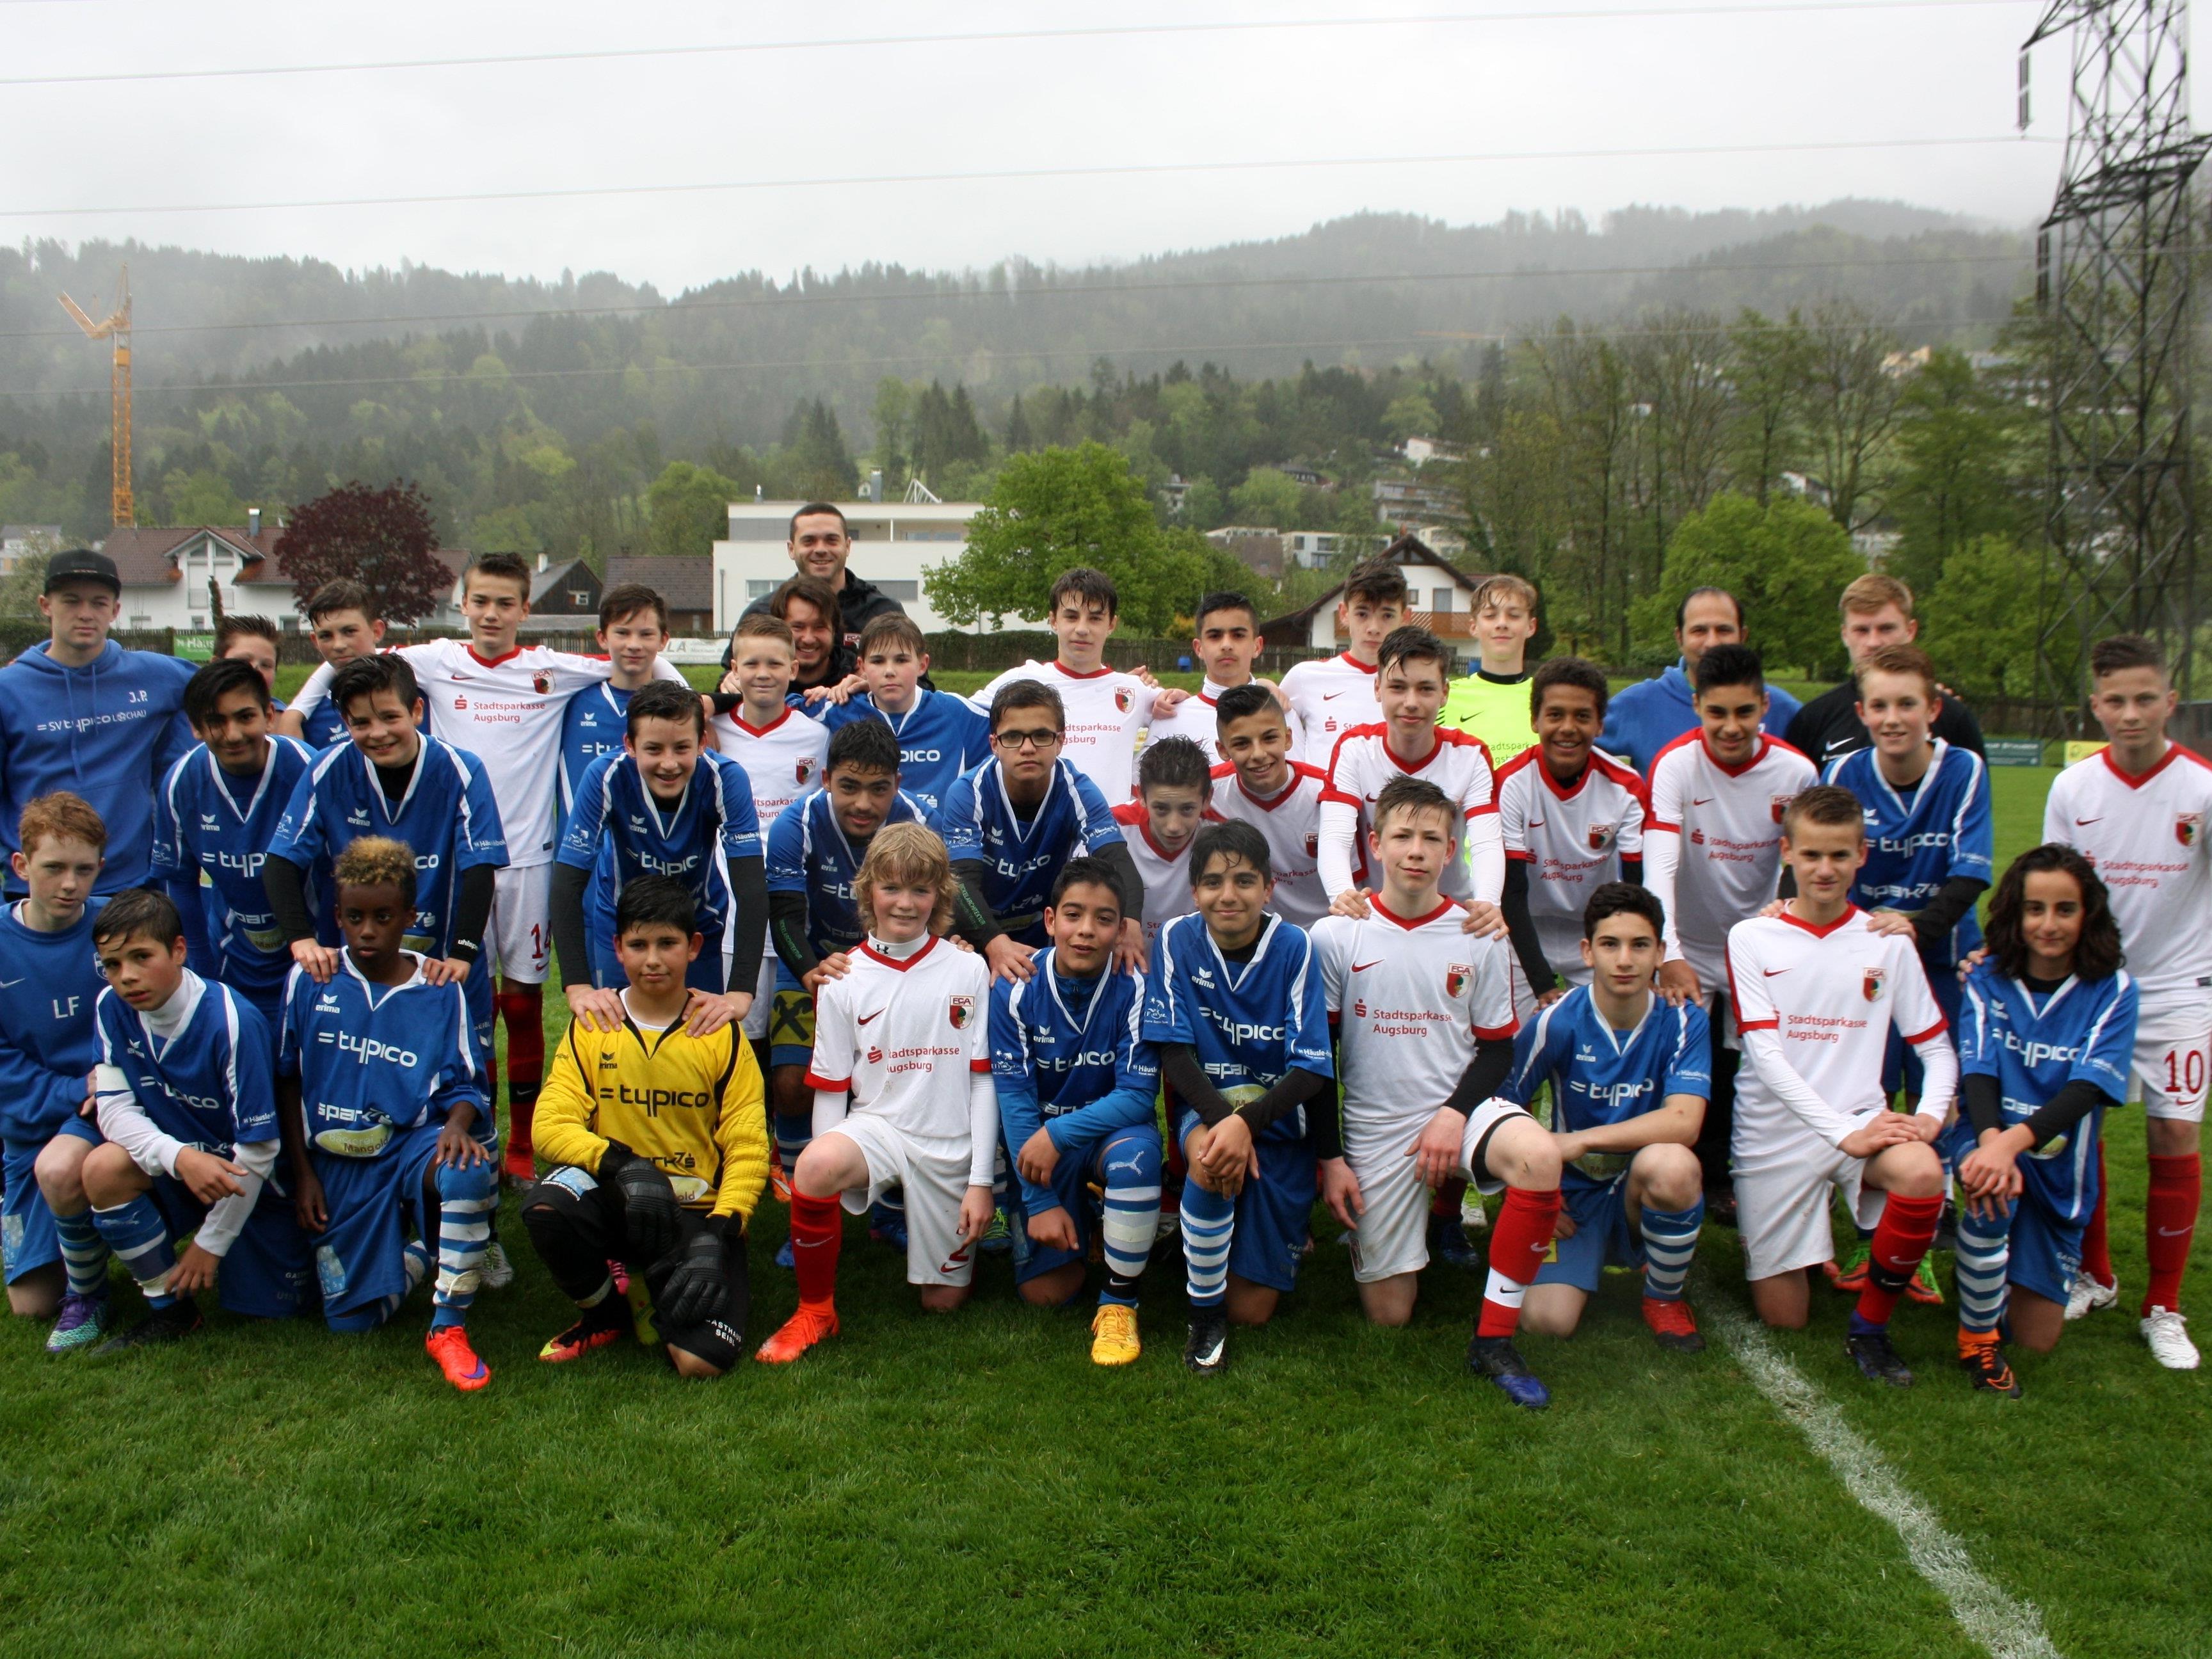 Die SPG Leiblachtal mit Spielern aus Lochau, Hörbranz und Hohenweiler zusammen mit dem Topteam aus Augsburg beim ersten U 14 Blitzturnier im Stadion Hoferfeld in Lochau.